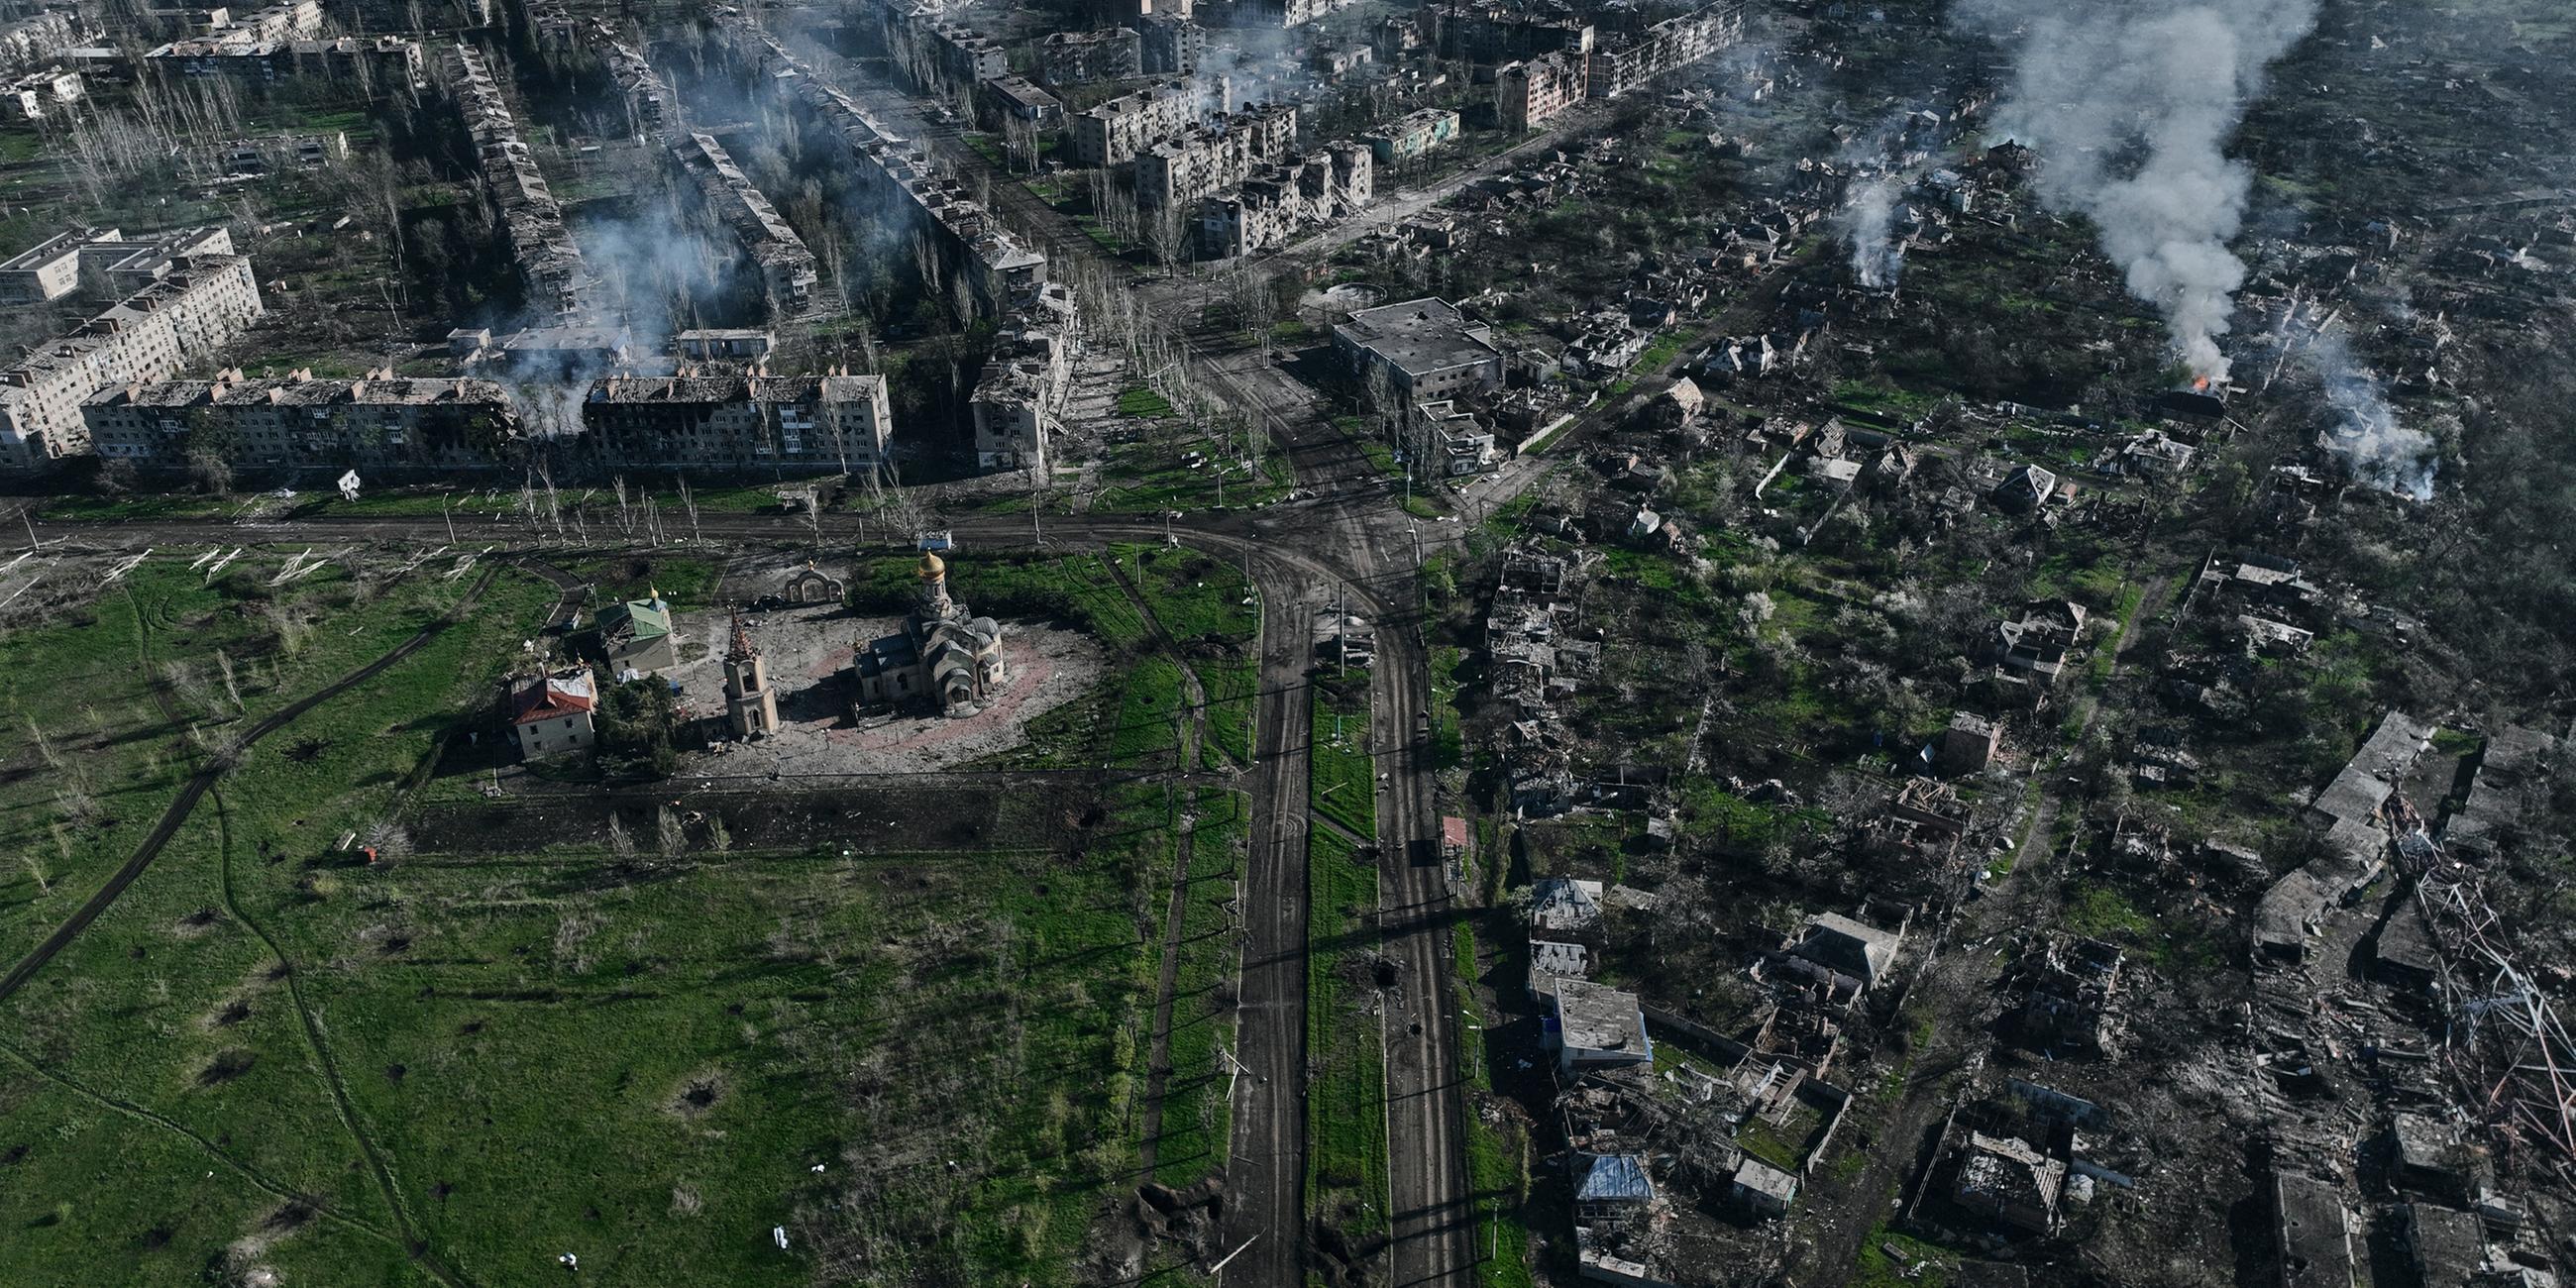 Luftaufnahme die zahlreiche zerstörte Gebäuden und Bombenkrater zeigt